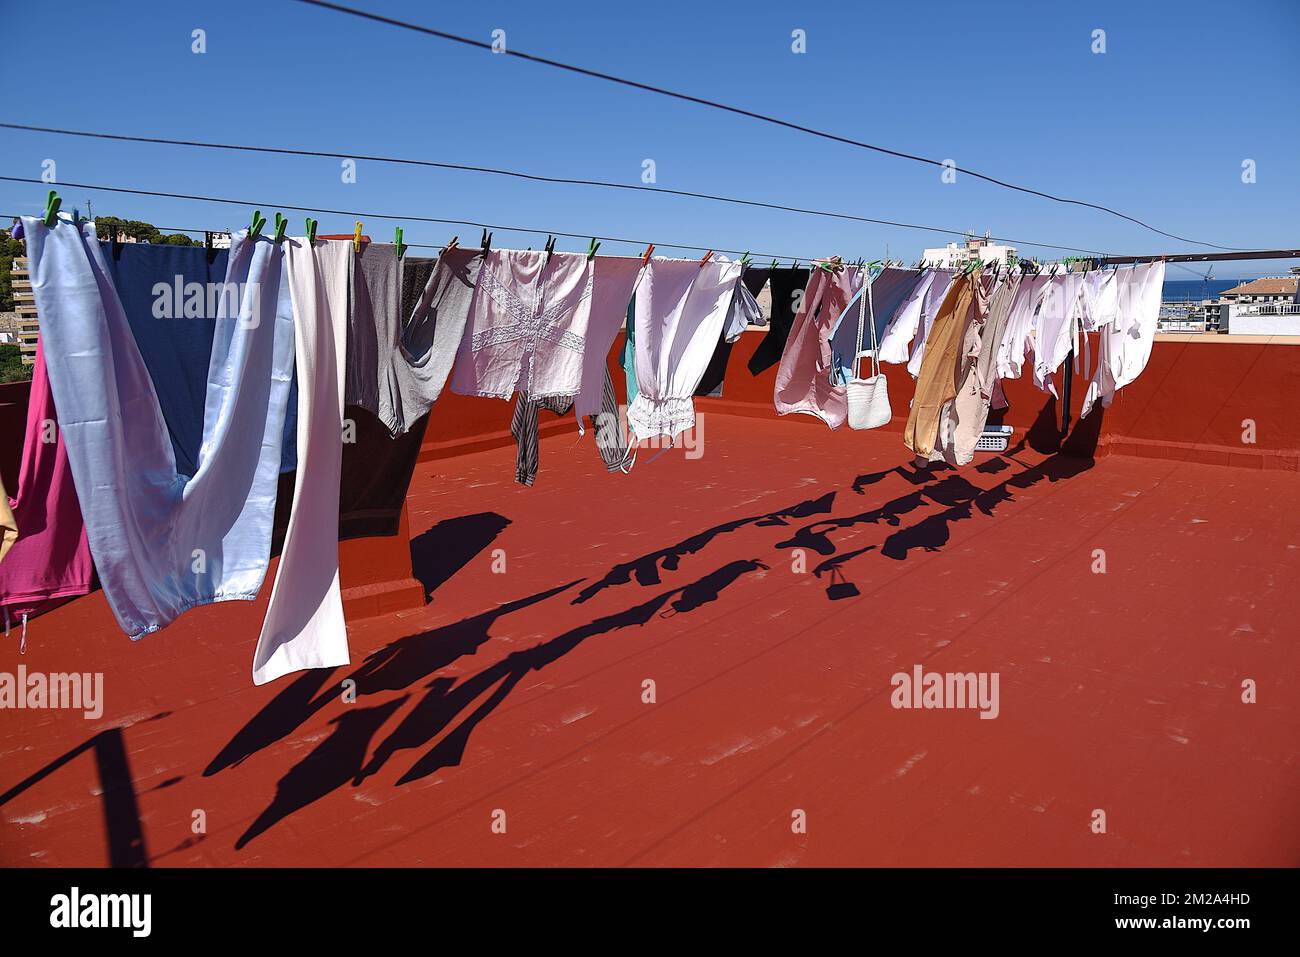 Drying of laundry | Séchage du linge 05/10/2017 Stock Photo